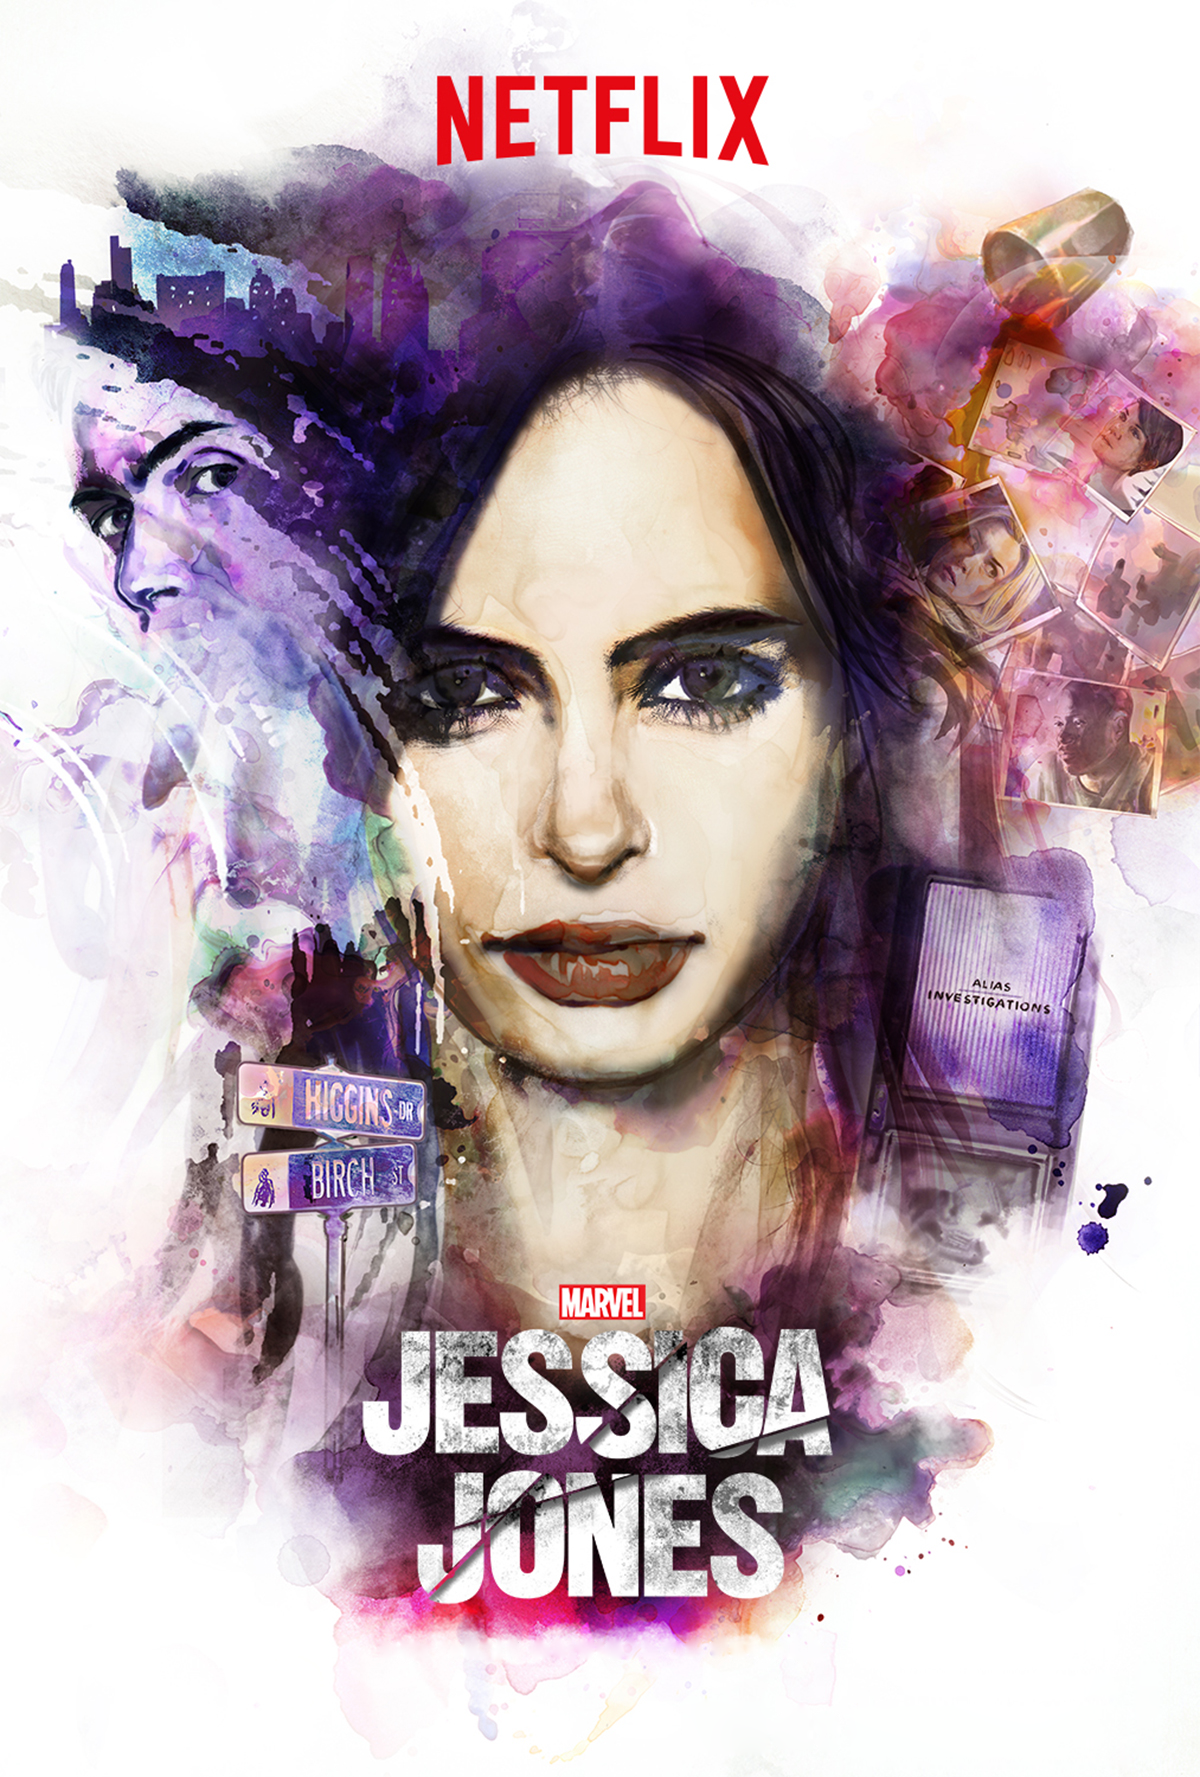 Résultat de recherche d'images pour "jessica jones netflix poster season 1"